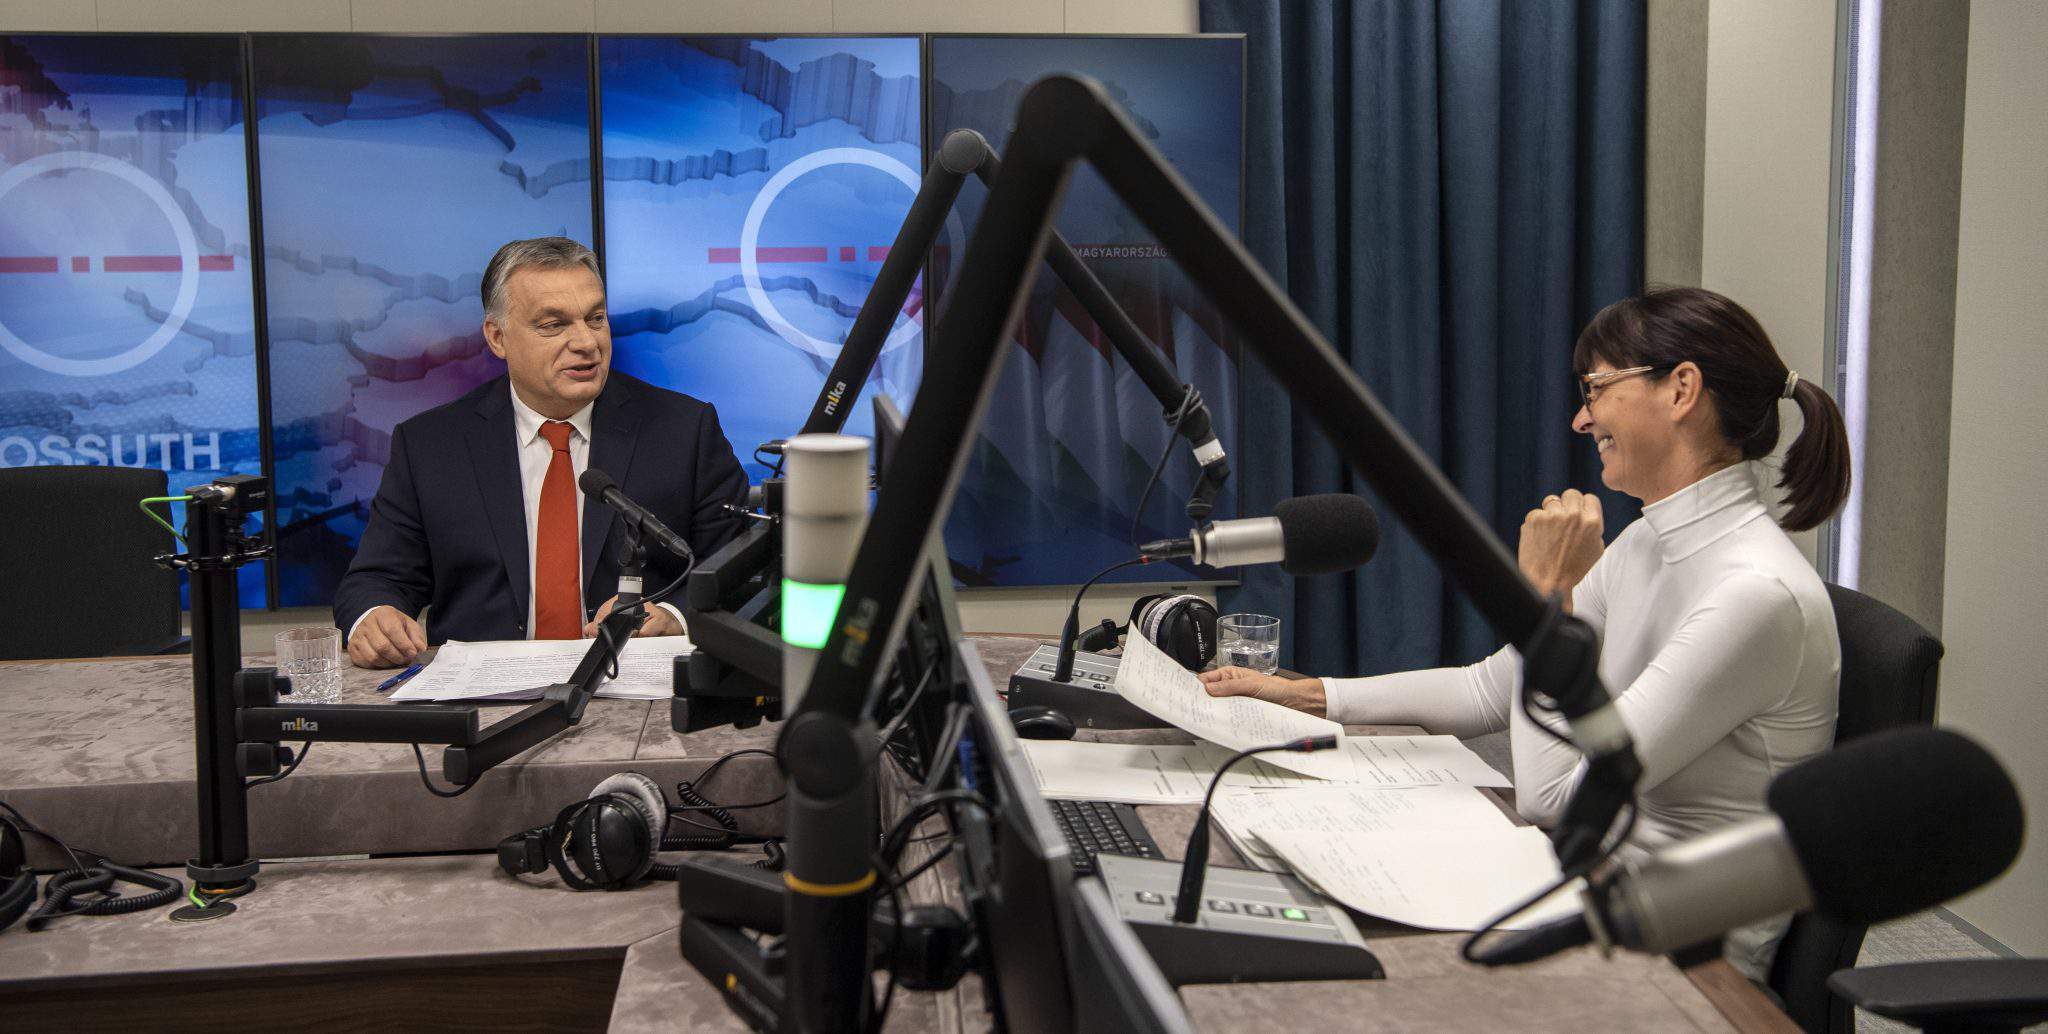 Radiointerview mit Orbán